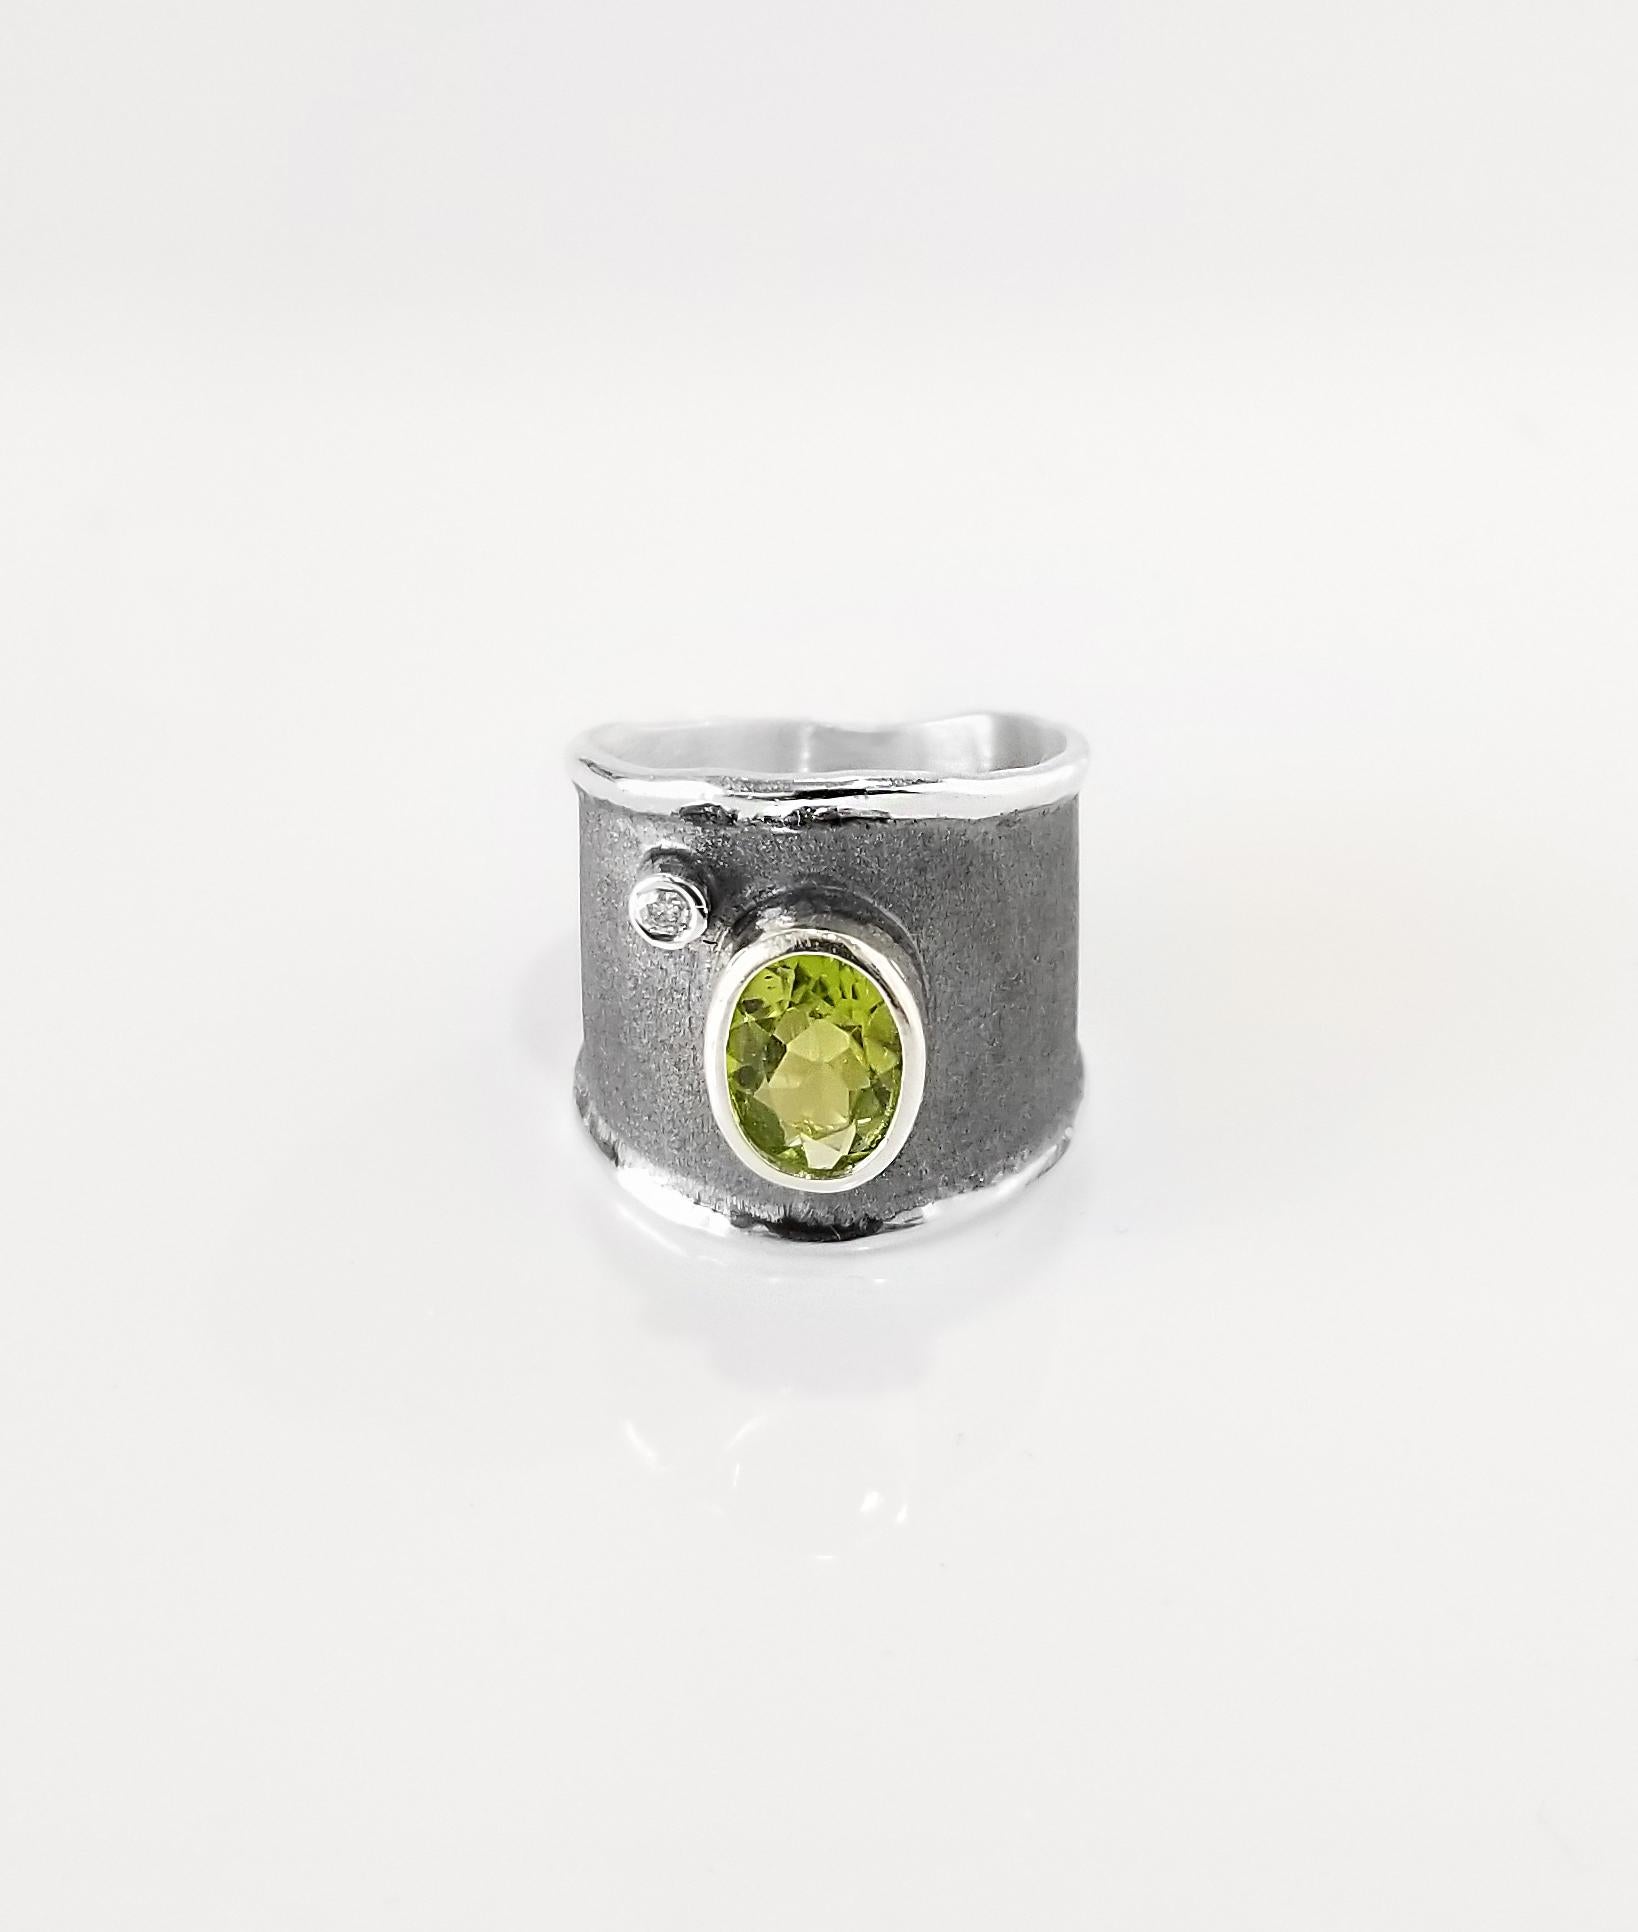 Yianni Creations präsentiert einen handgefertigten Ring aus der Hephestos-Kollektion, der aus reinem 950er Silber gefertigt und zum Schutz gegen Anlaufen mit Palladium beschichtet ist. Der Ring zeigt 2,00 Karat Peridot und 0,03 Karat Diamant im